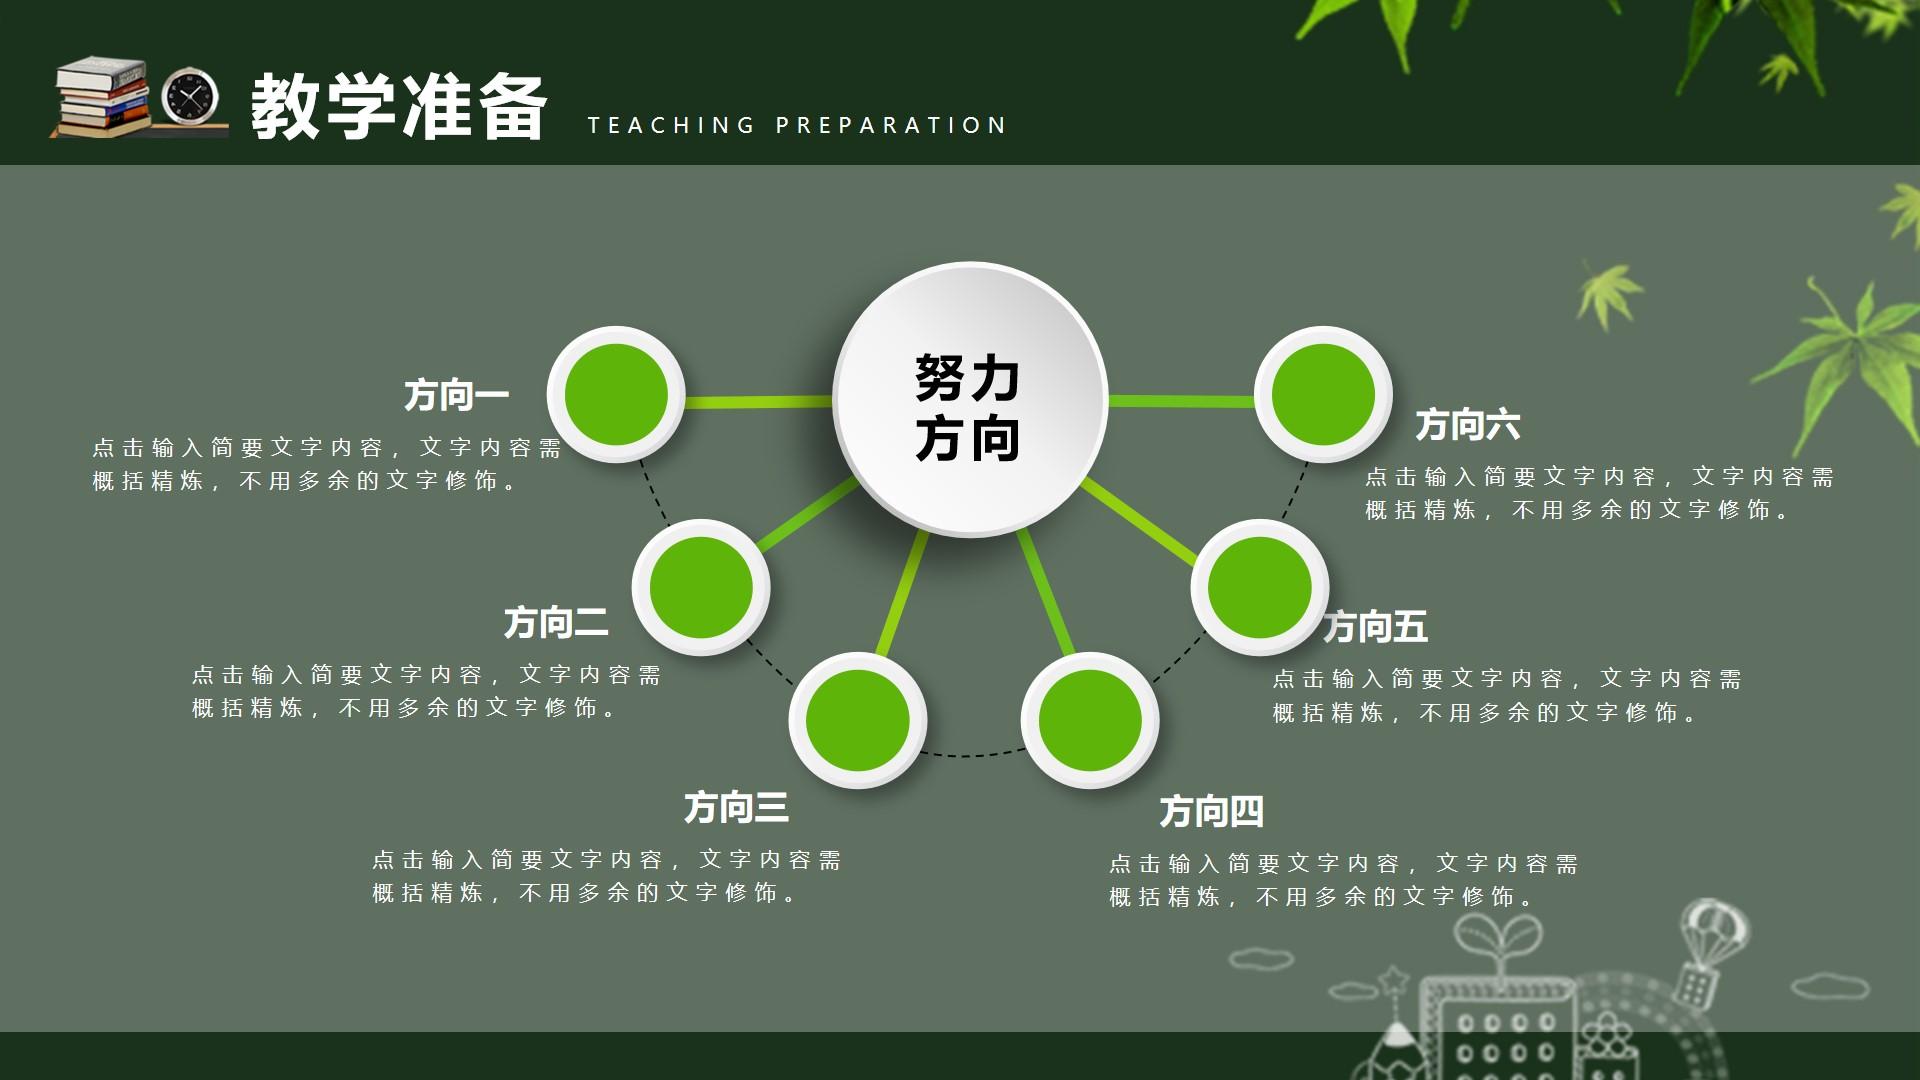 教育教学绿色白色实景卡通方向 精炼 修饰 teaching preparation云素材PPT模板1672664108941